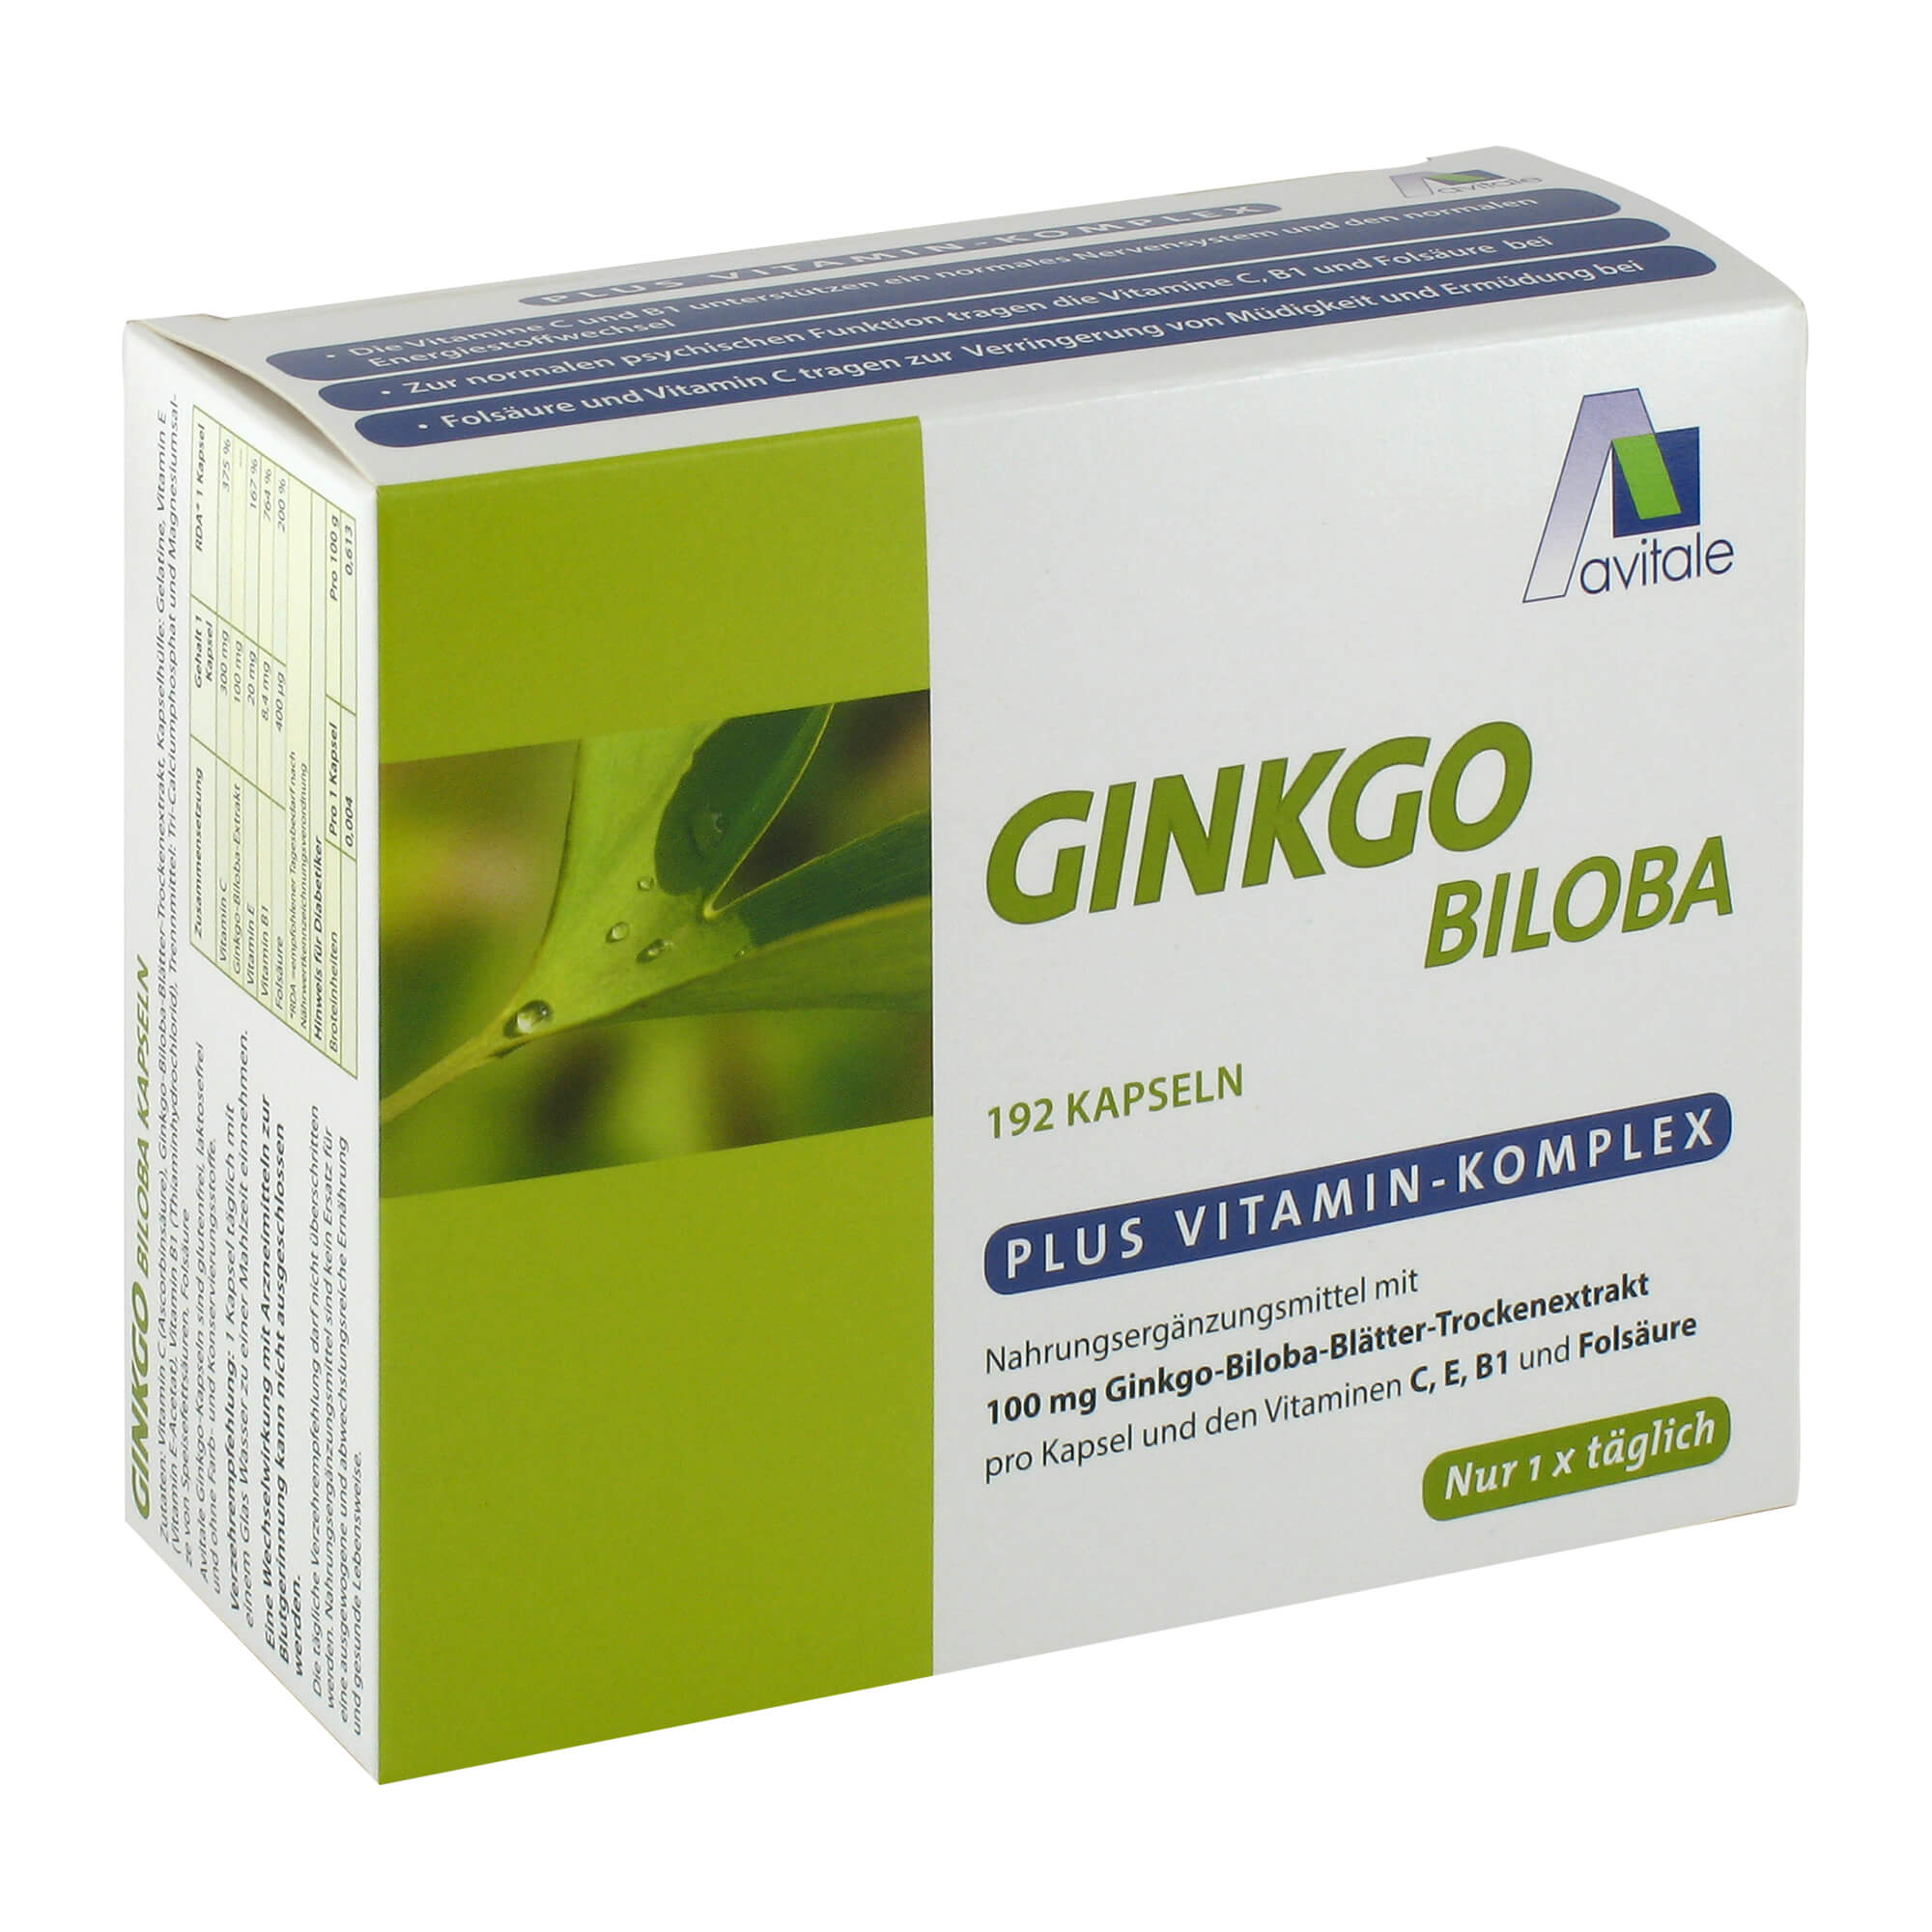 Nahrungsergänzungsmittel mit 100 mg Ginkgo-Biloba-Blätter-Trockenextrakt und den Vitaminen C, E, B1 und Folsäure.